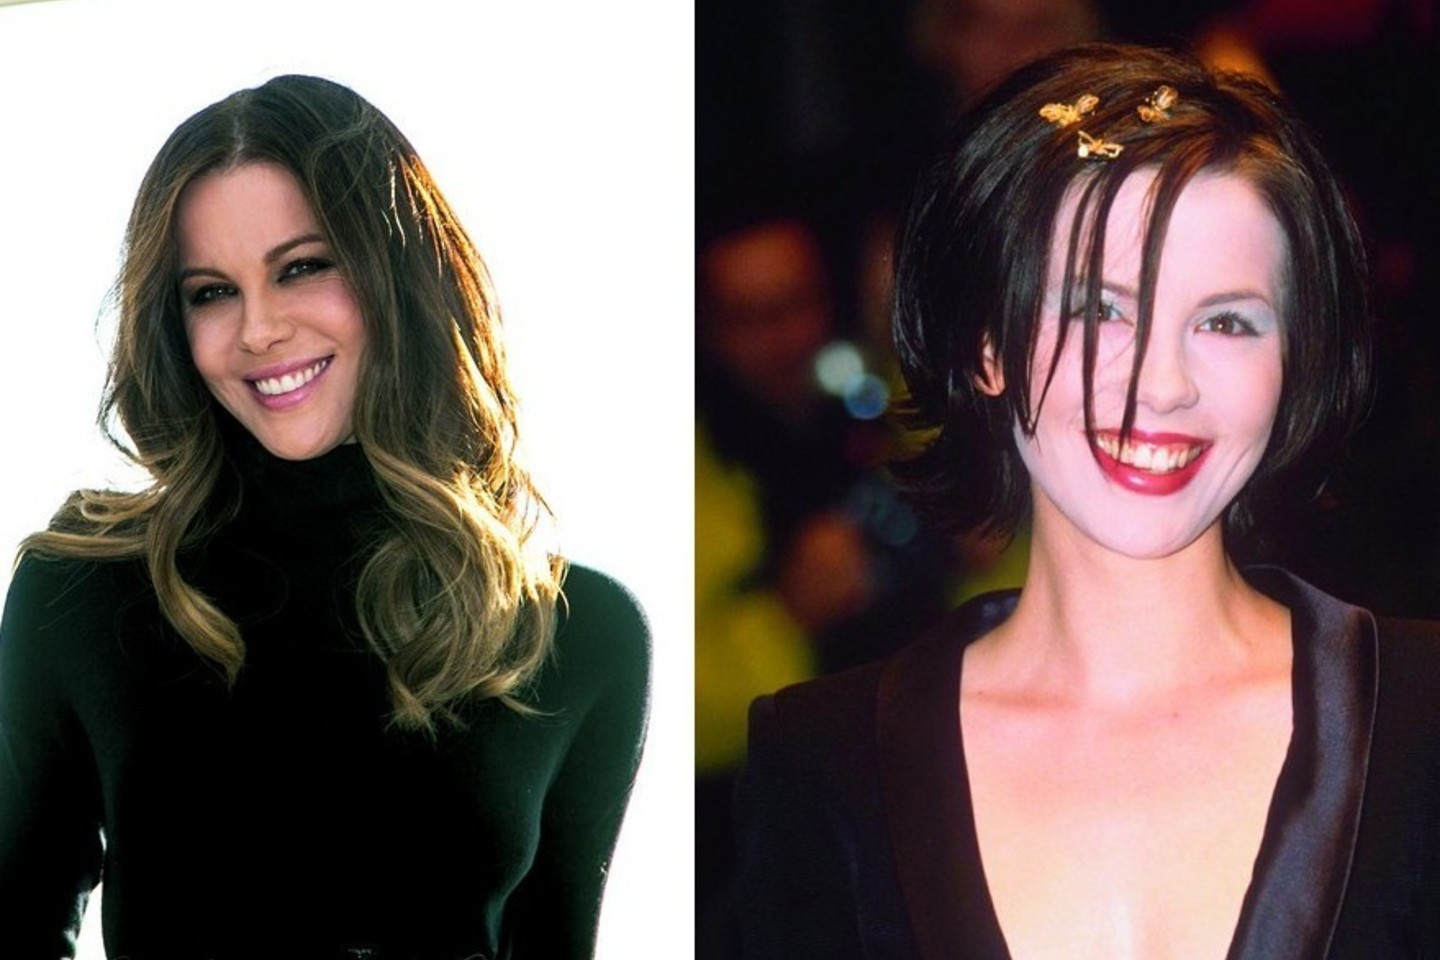 Pradėjusi filmuotis filmuose aktorė Kate Beckinsale buvo priversta apsilankyti pas estetinio plombavimo specialistus. Pokyčiai – tiesiog stulbinami.<br>ViDA Press nuotr.